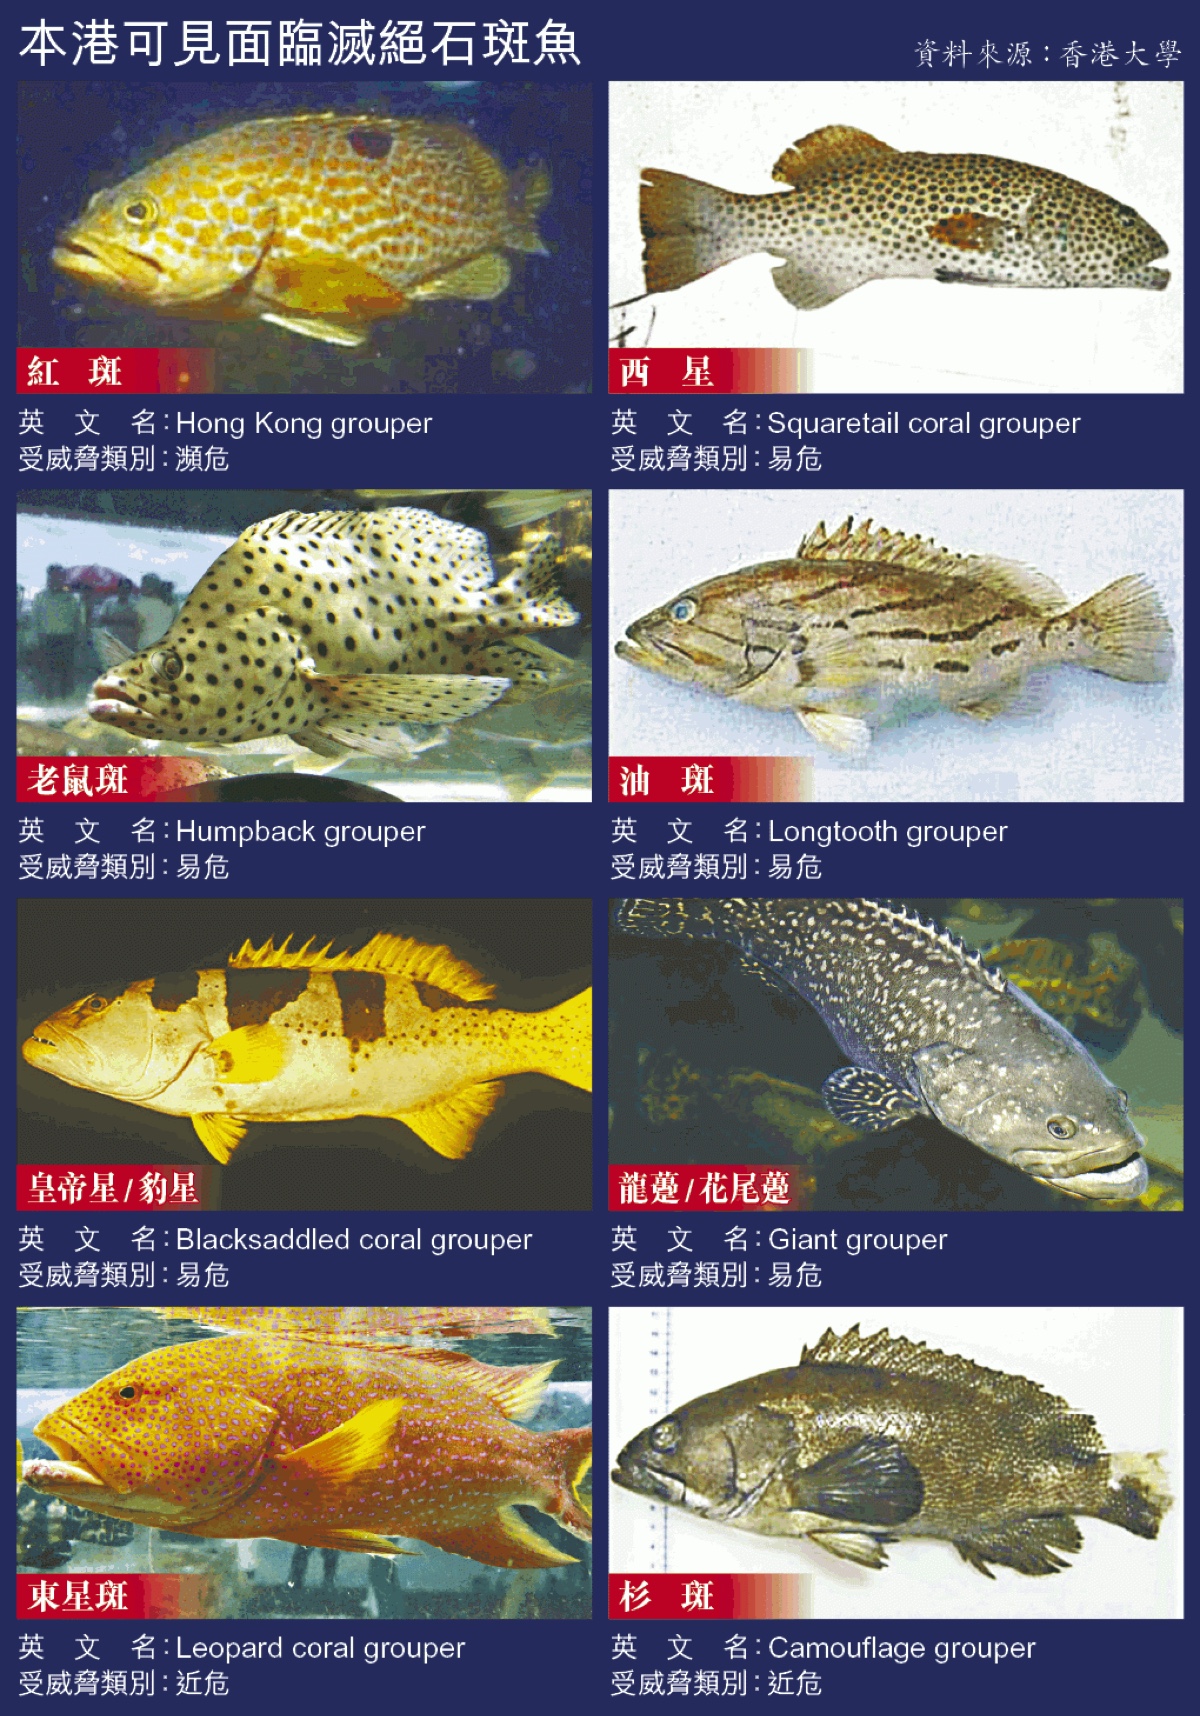 石斑鱼的英语名称 grouper 来自於葡萄牙语 garoupa